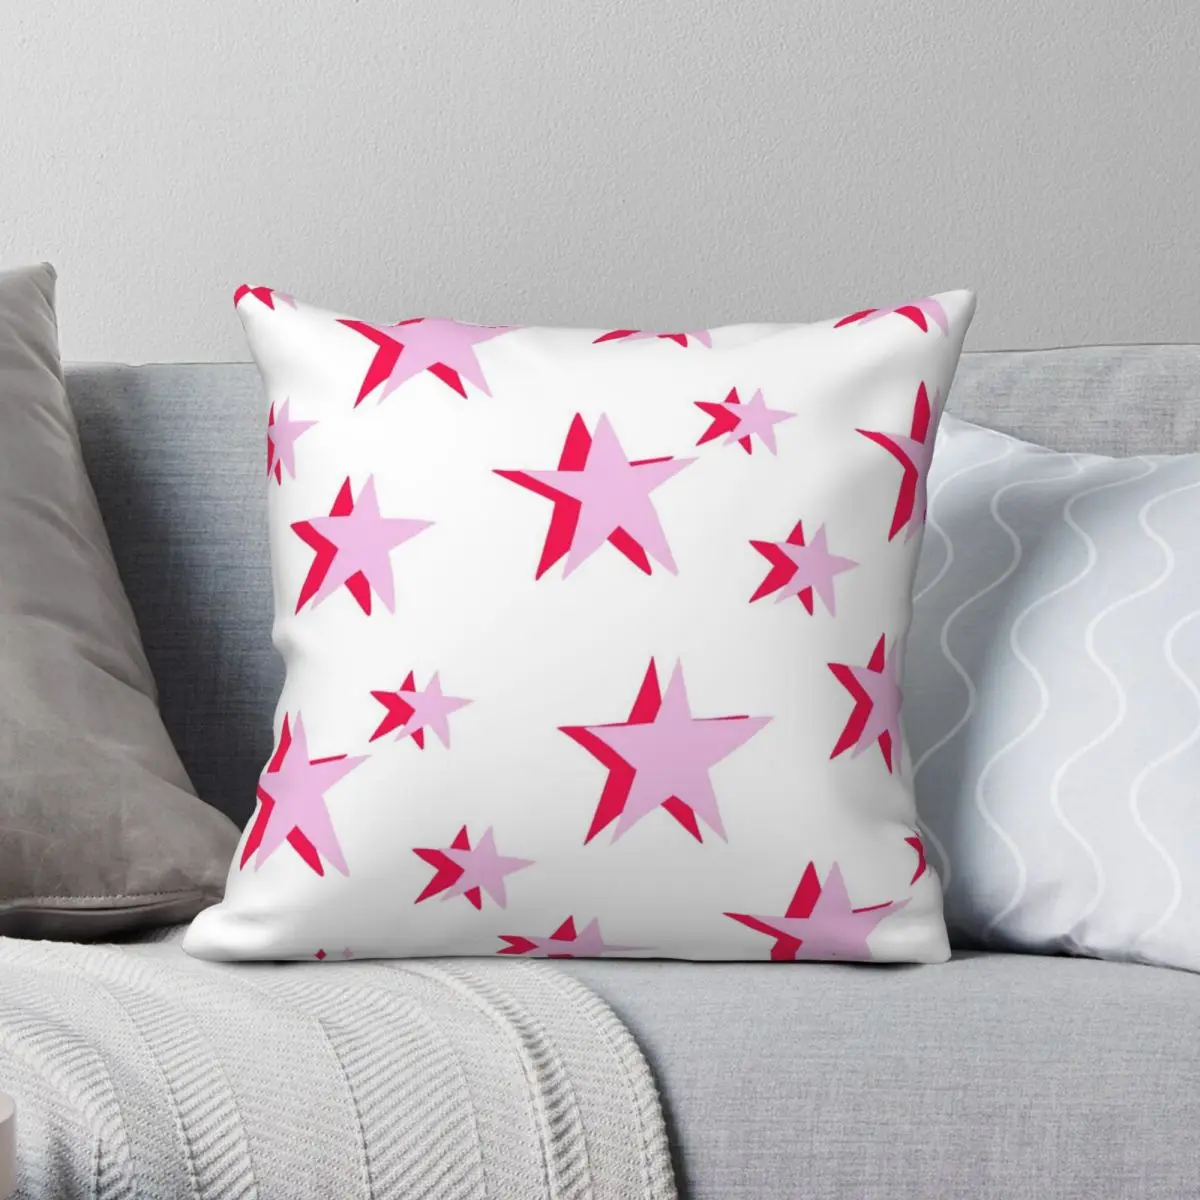 

Розовая и красная квадратная подушка Vsco со звездами, чехол из полиэстера и льна, Вельветовая креативная Декоративная Подушка на молнии, чехол для дивана, подушки для сидения